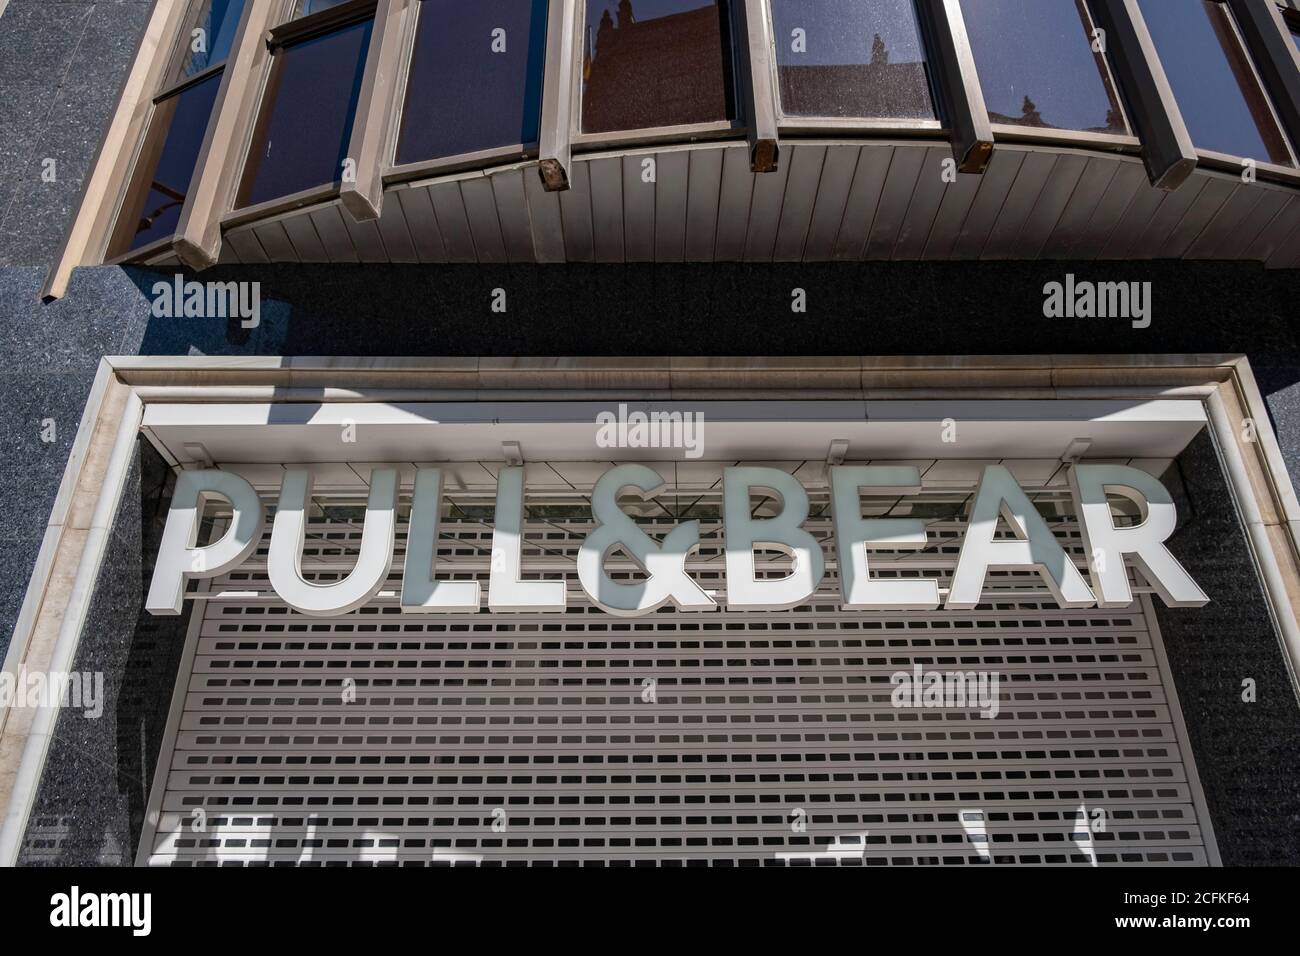 Barcelona, España. 6 de septiembre de 2020. El logotipo Pull Bear, una de las marcas del grupo Inditex que se encuentra el centro comercial de Portal del l'Àngel de Barcelona.tras